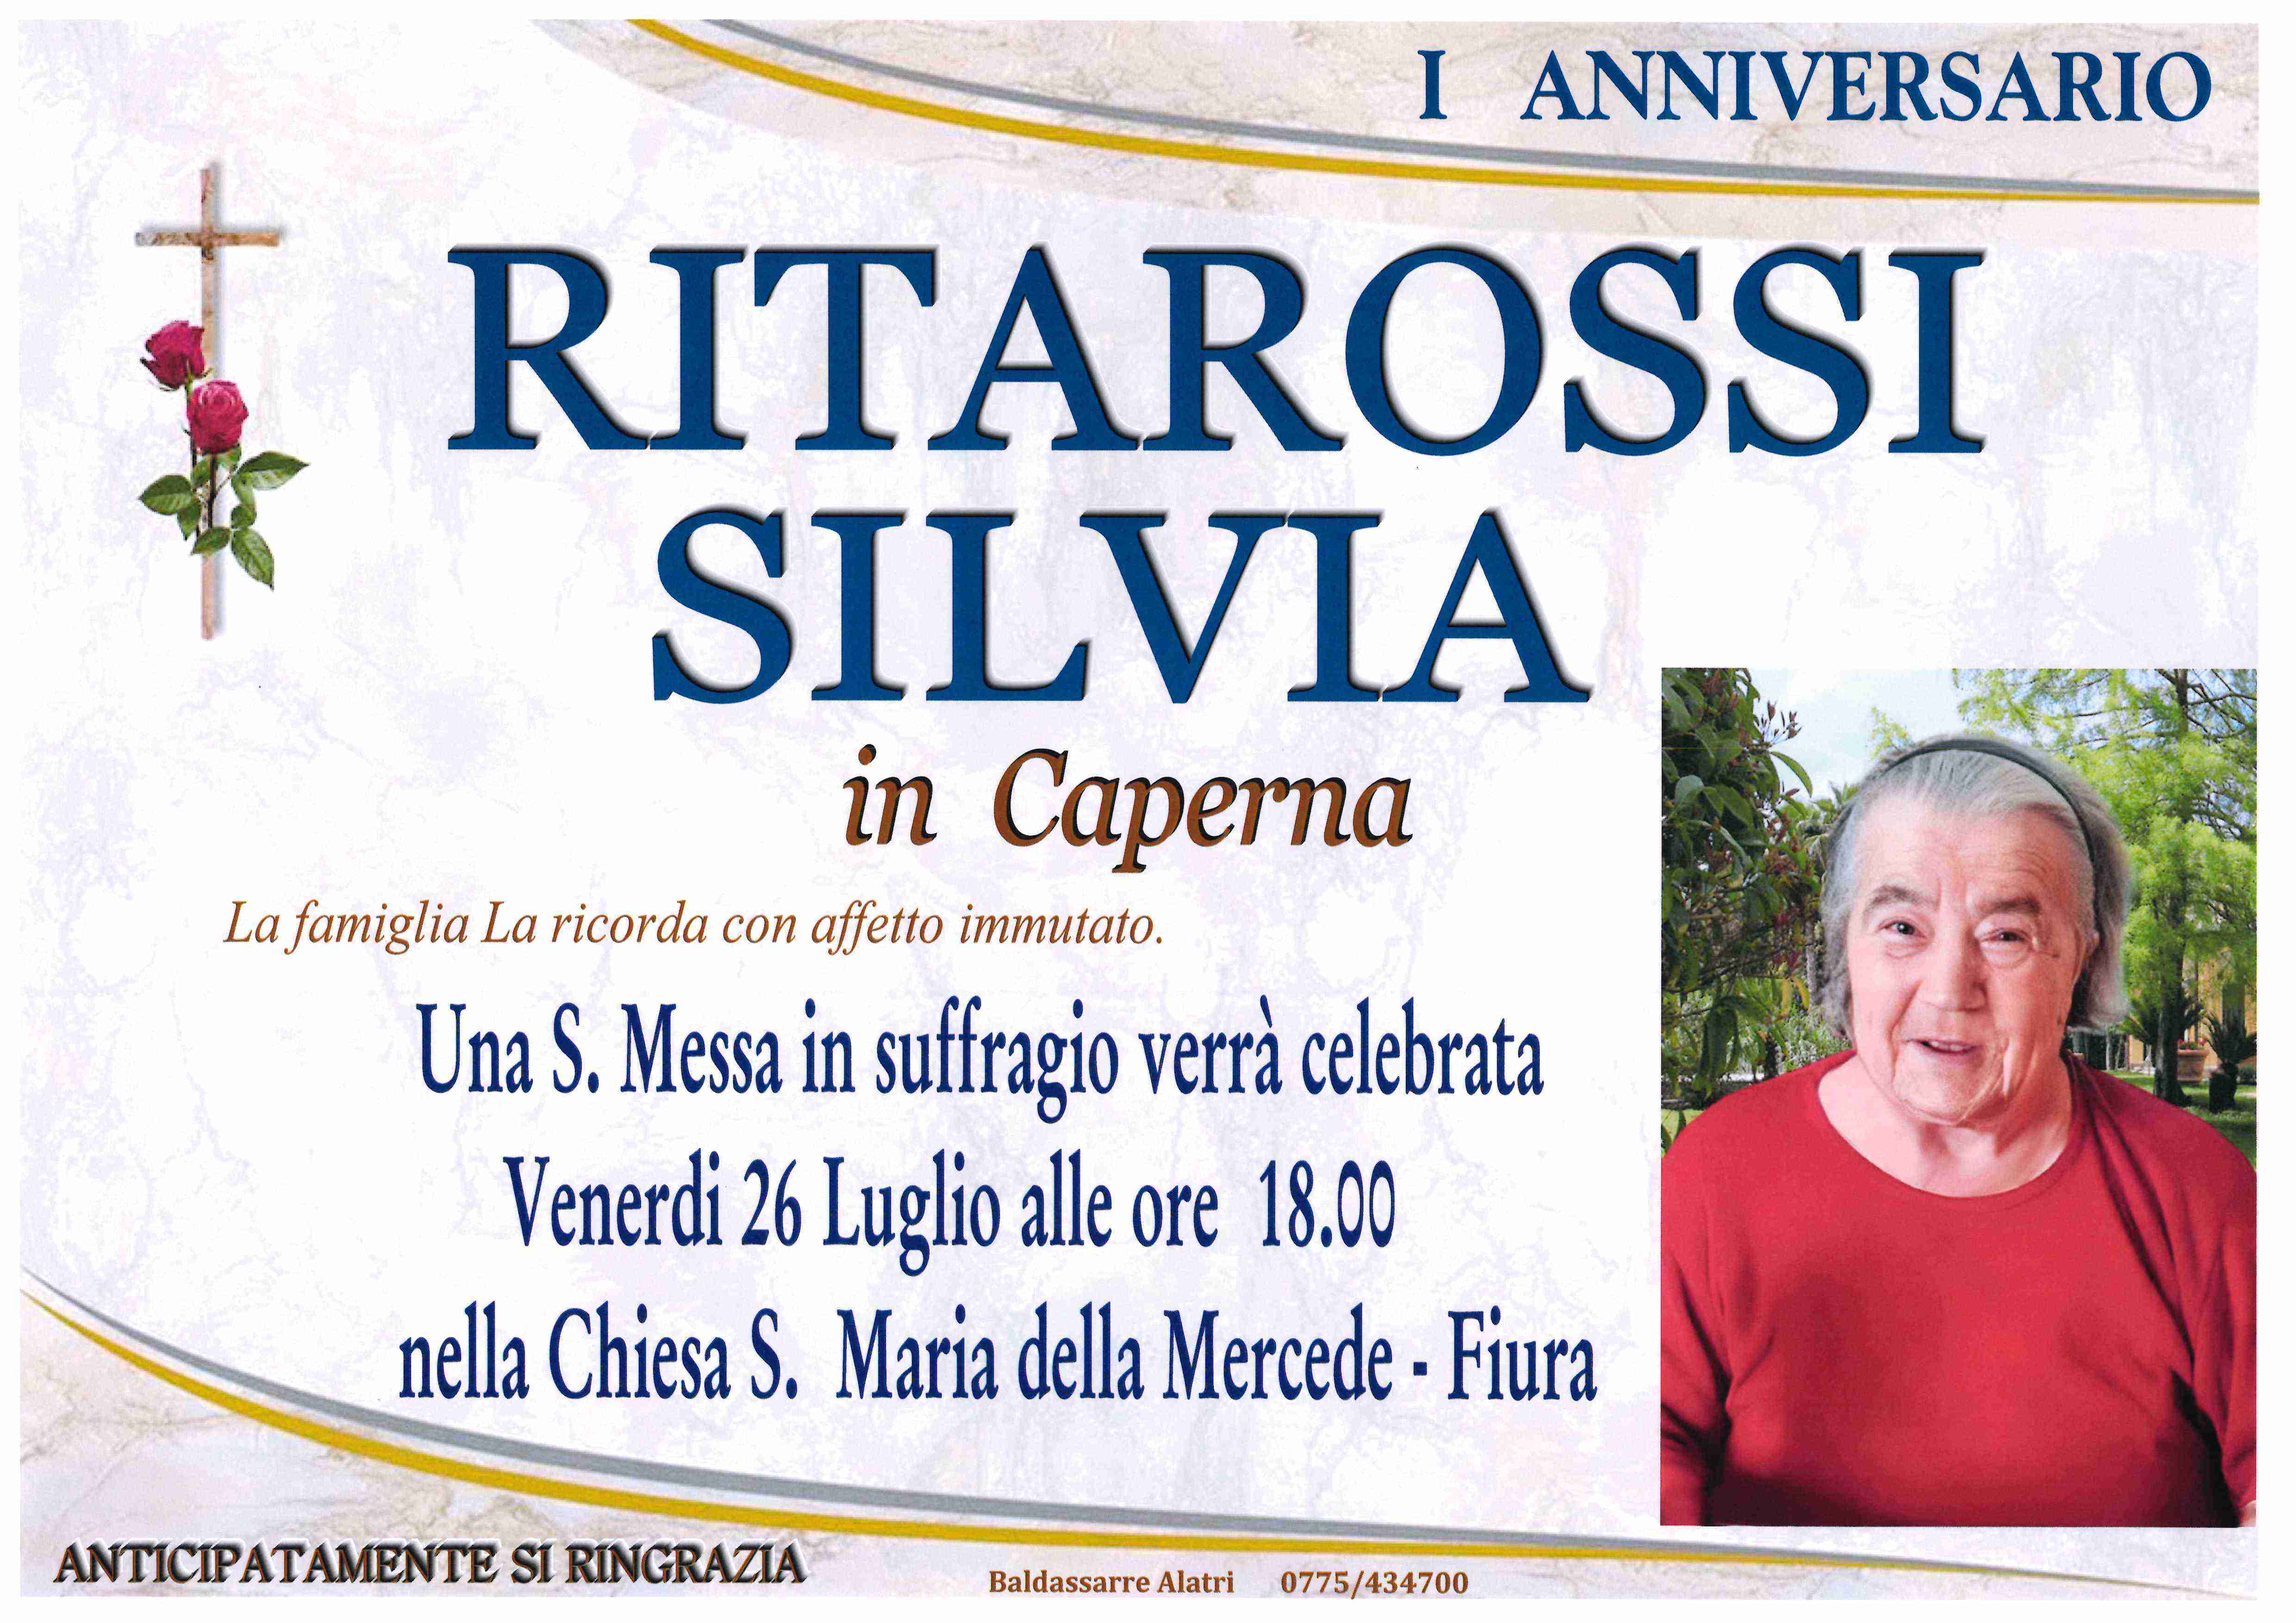 Silvia Ritarossi